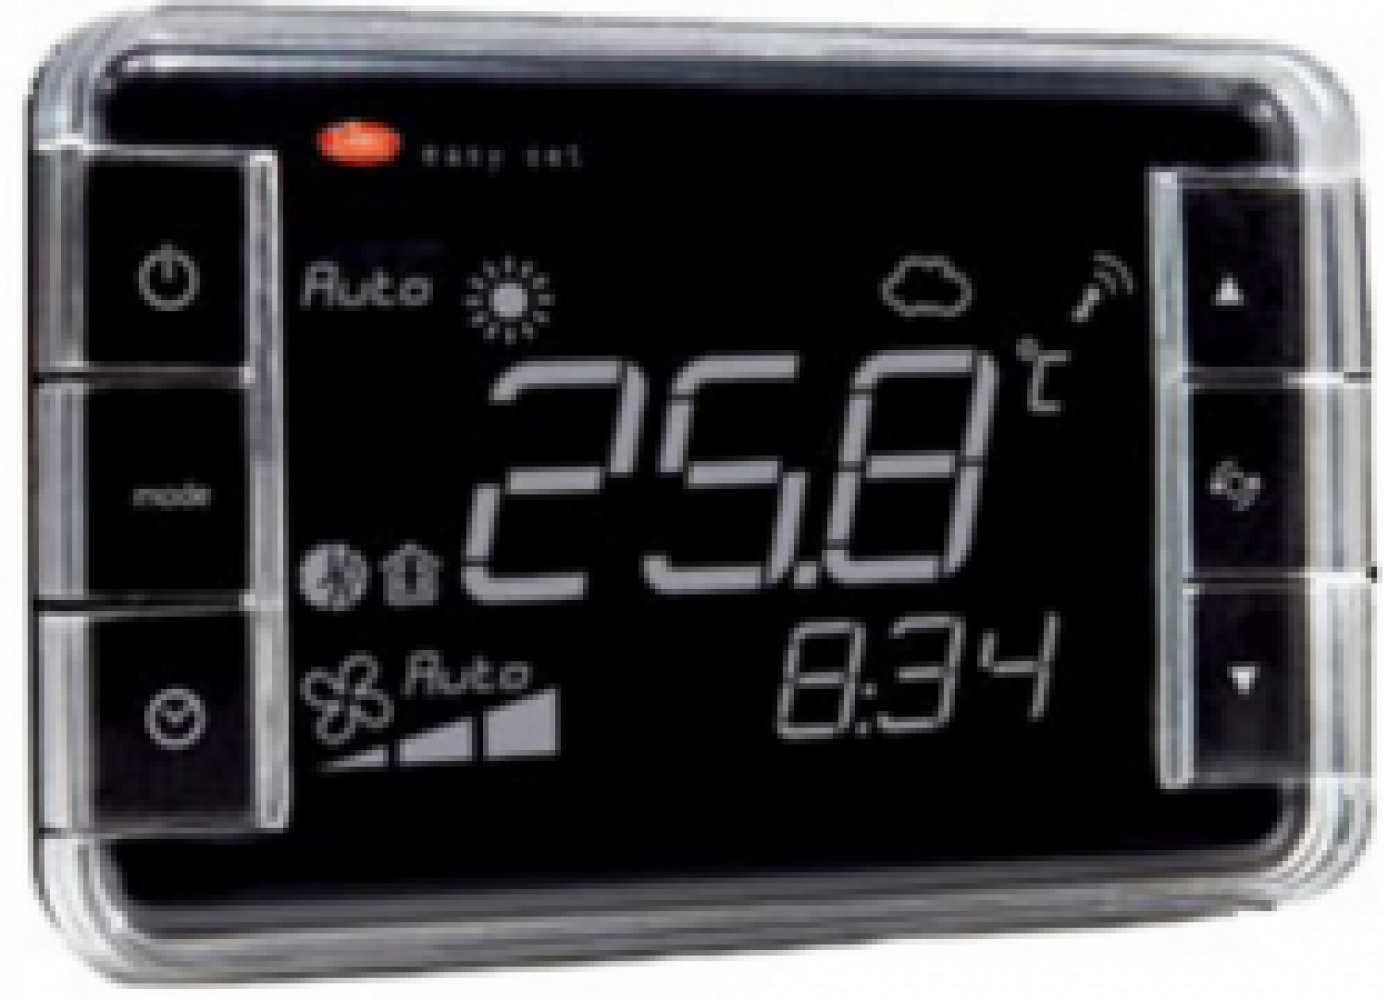 EW01TA2300 Термостат Easyset для e-dronic, контроль температуры, корпус черного цвета, &quot;прямое&quot; отображение, подсветка